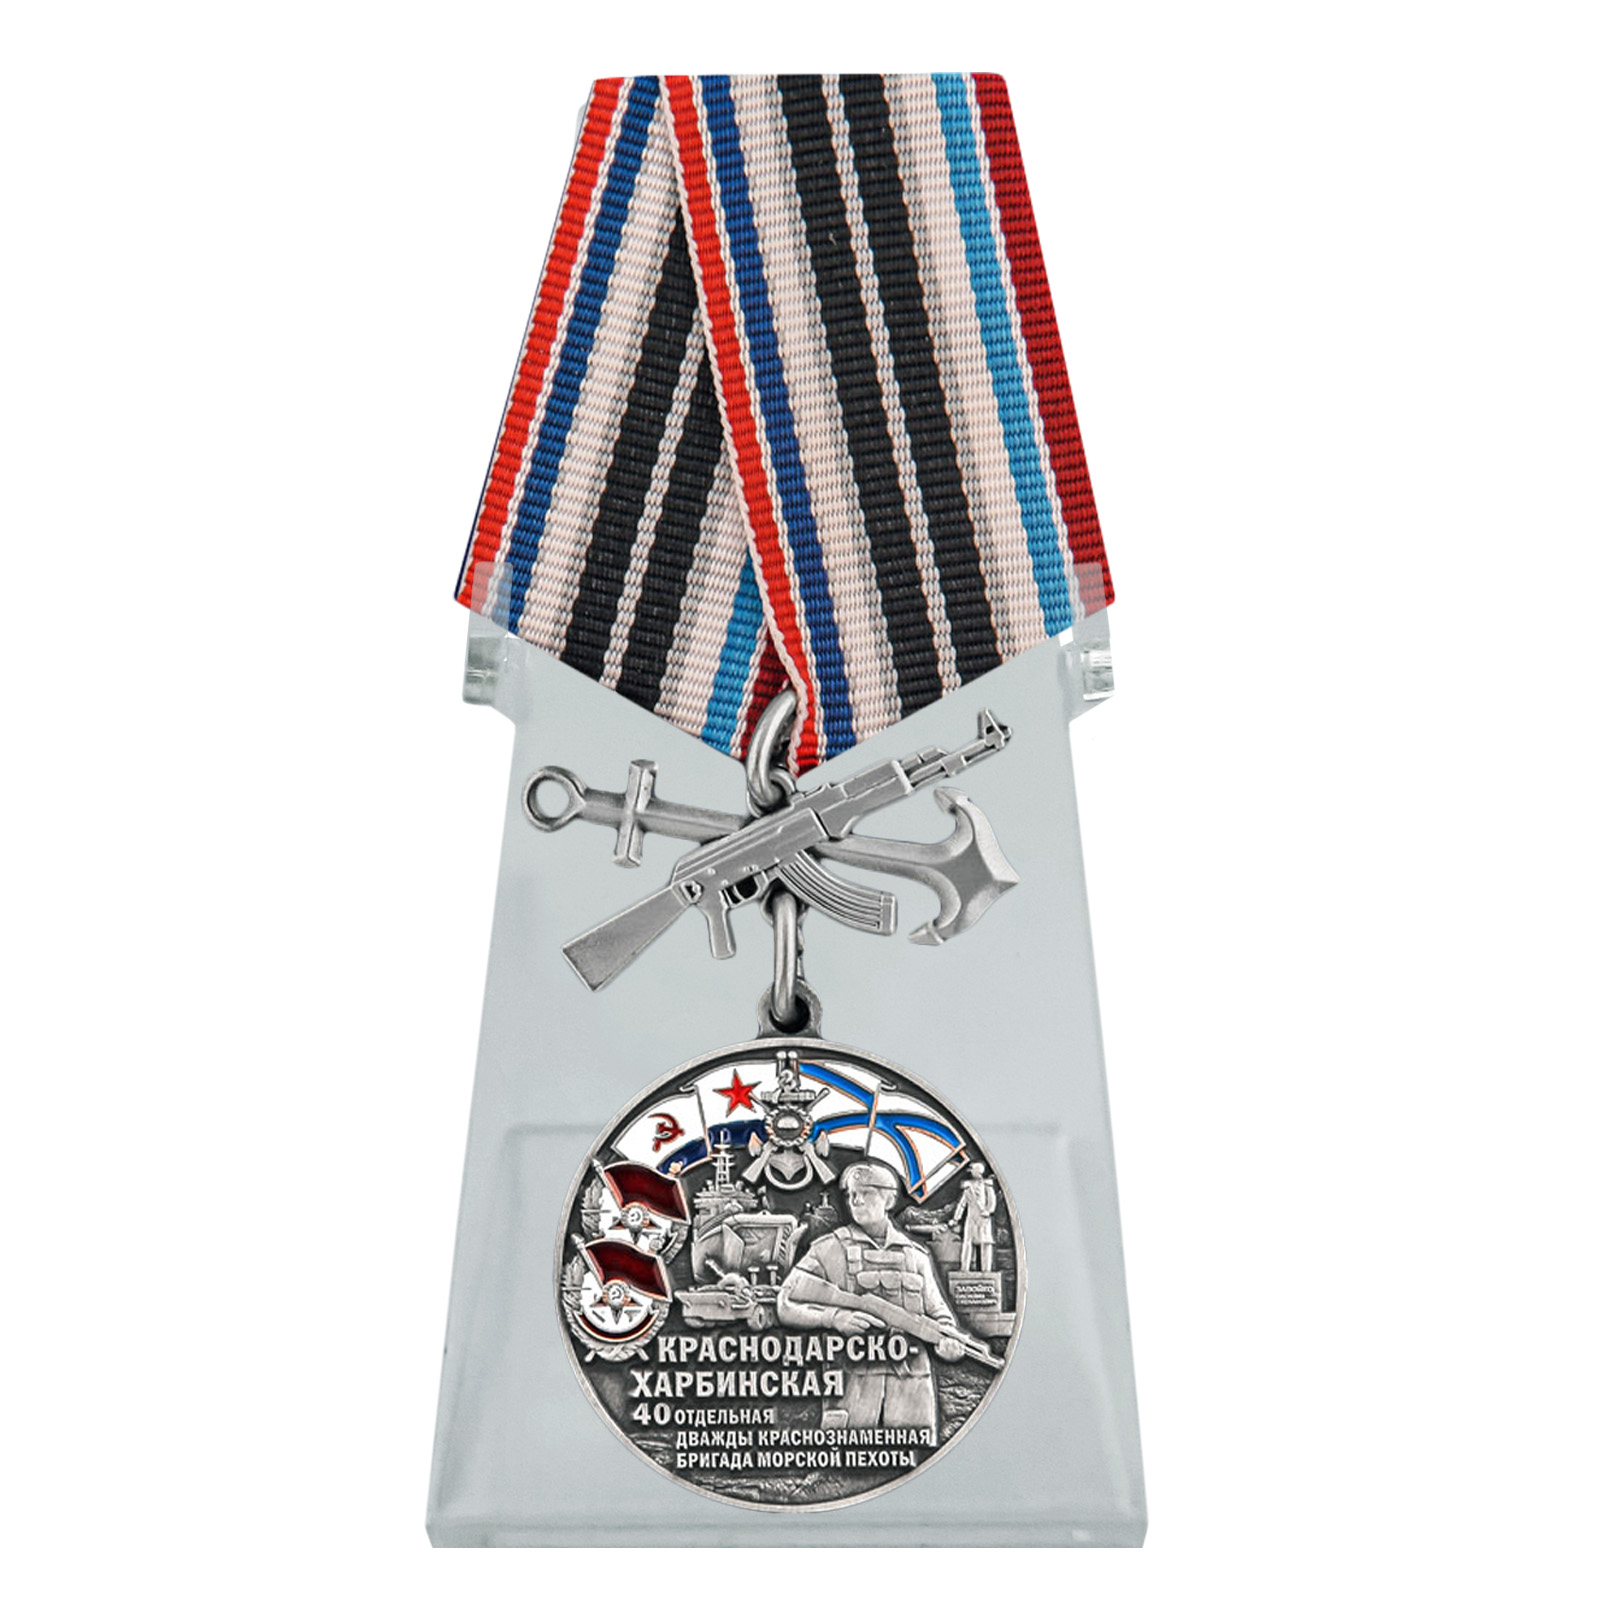 Купить медаль 40-я Краснодарско-Харбинская бригада морской пехоты на подставке онлайн